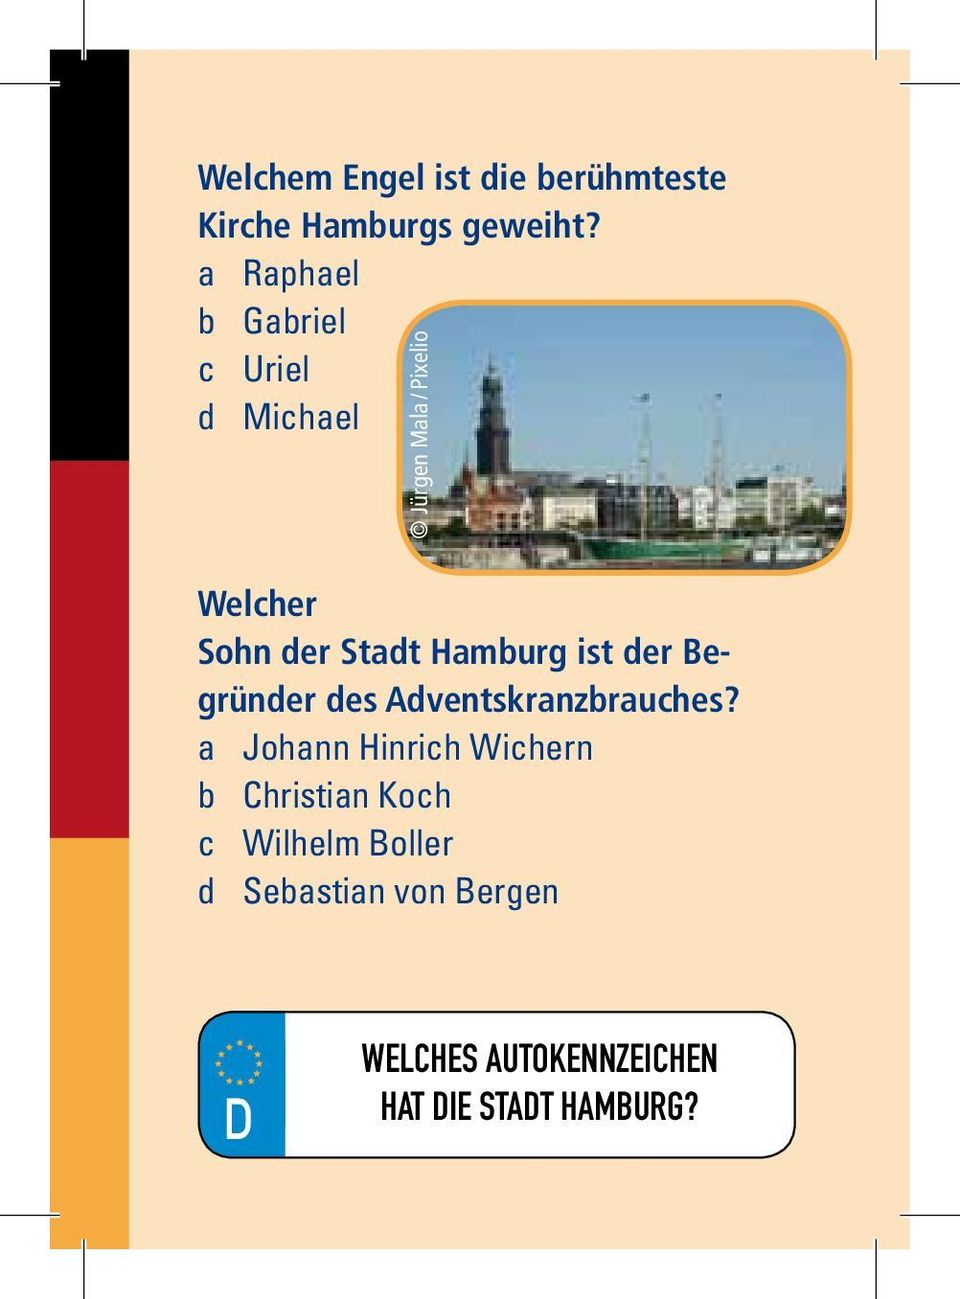 Stadt Hamburg ist der Begründer des Adventskranzbrauches?